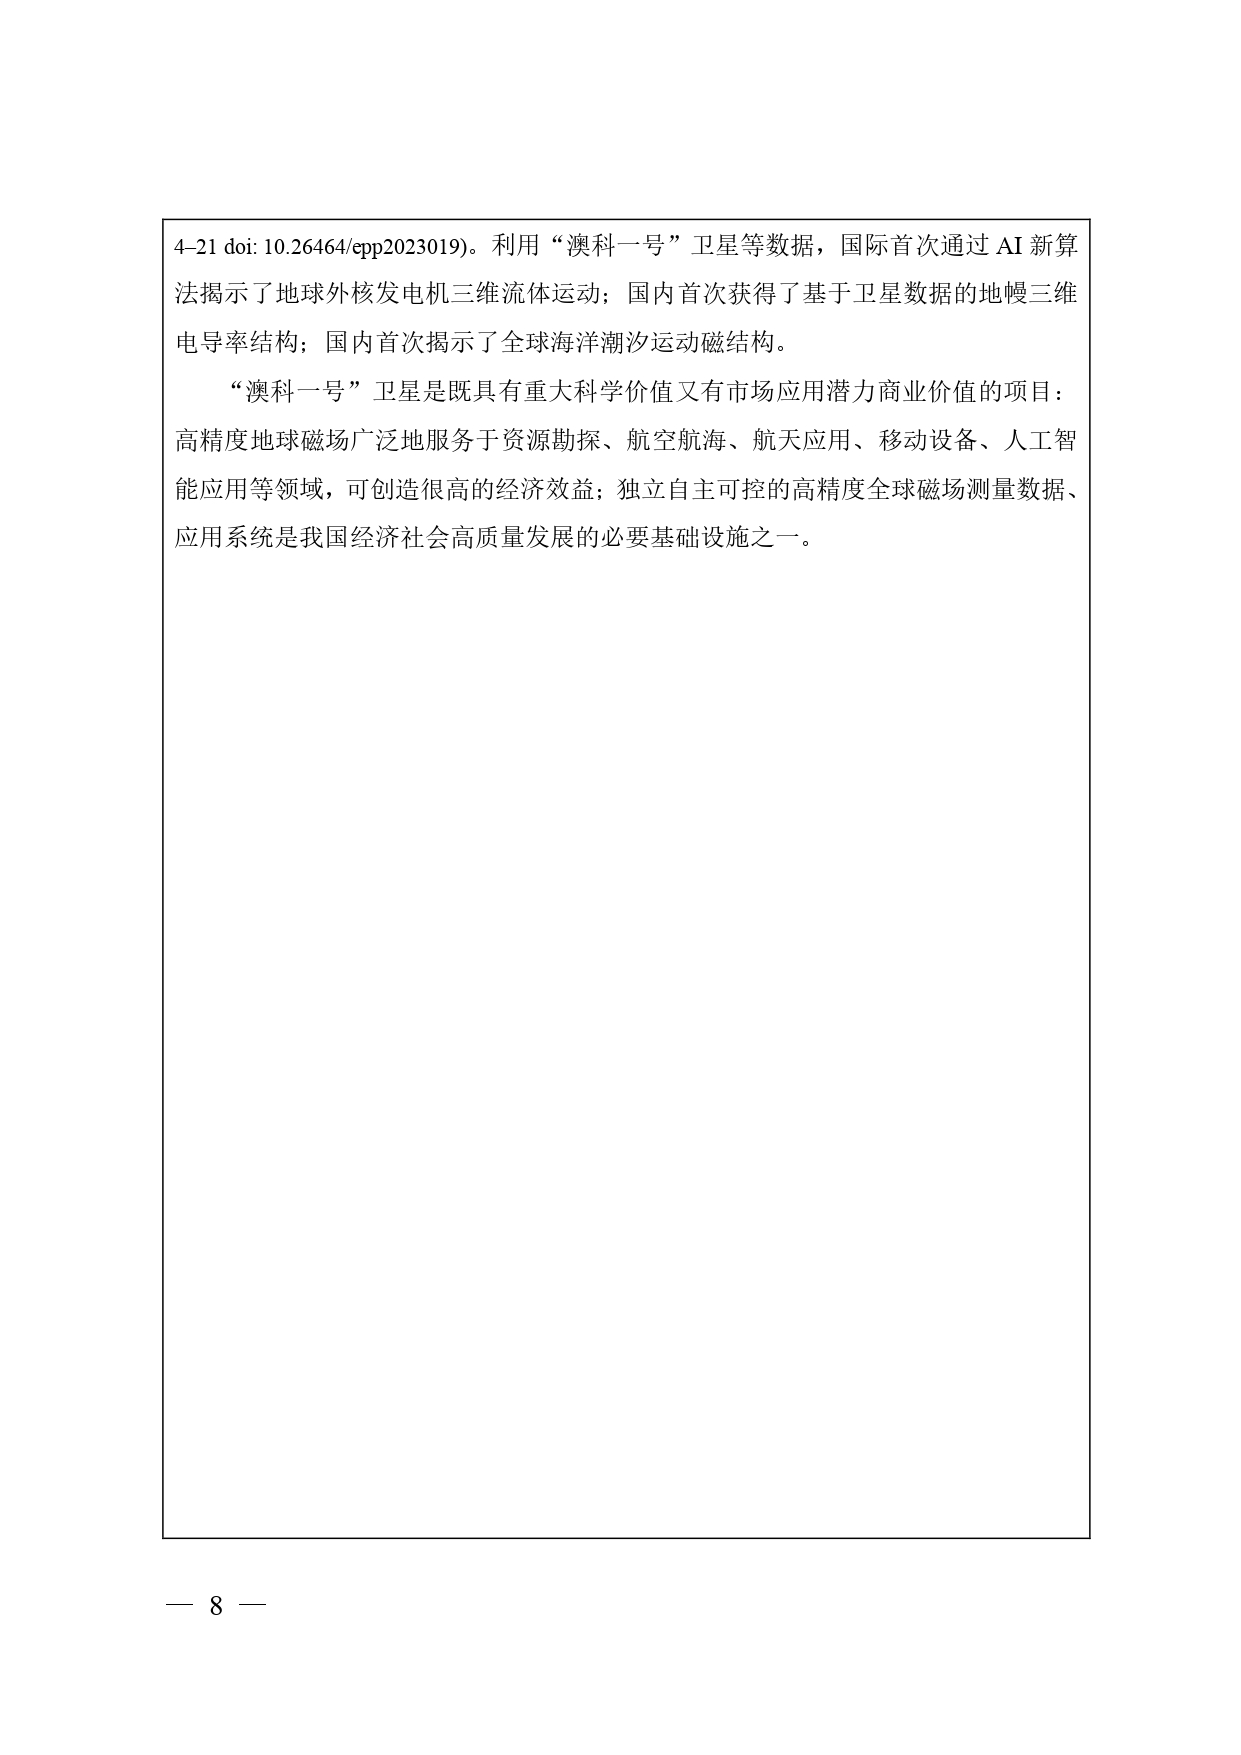 中国高等学校十大科技进展申报表 张可可终版3 page 0008